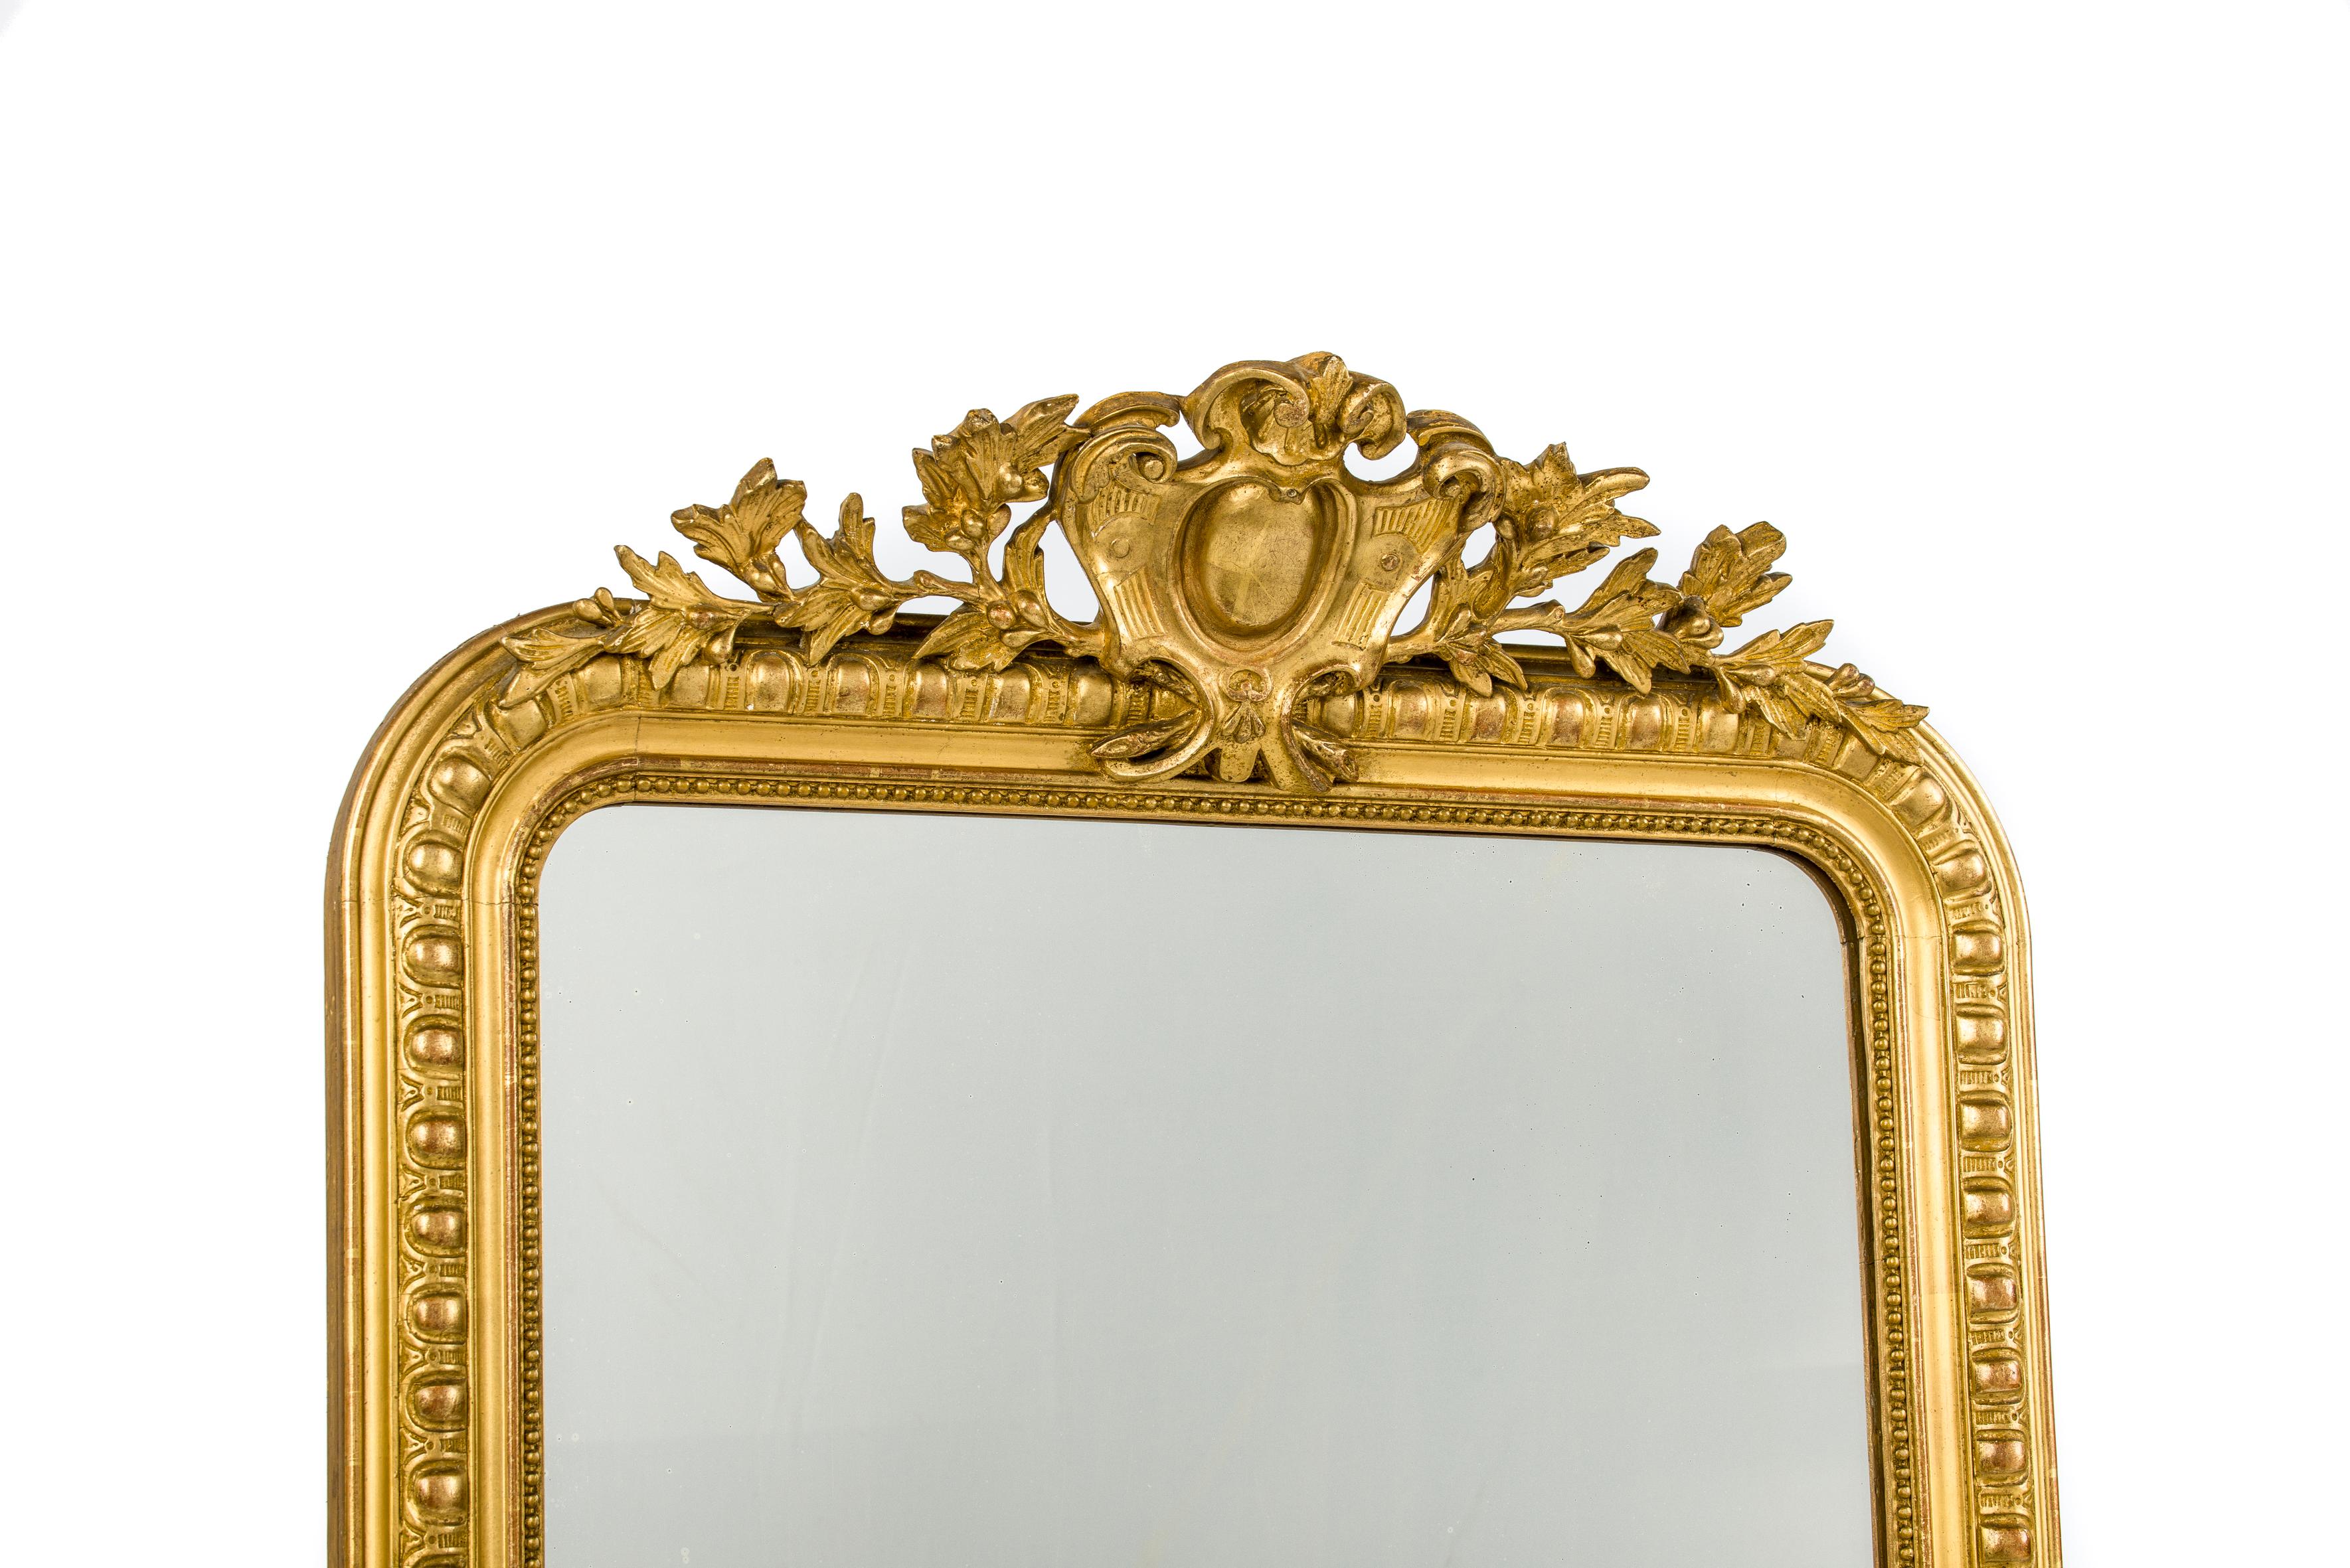 Ce magnifique miroir ancien a été fabriqué dans le sud de la France au milieu du XIXe siècle. Il présente les coins supérieurs arrondis qui sont typiques des miroirs Louis Philippe. Le cadre du miroir présente un profil godronné détaillé et une